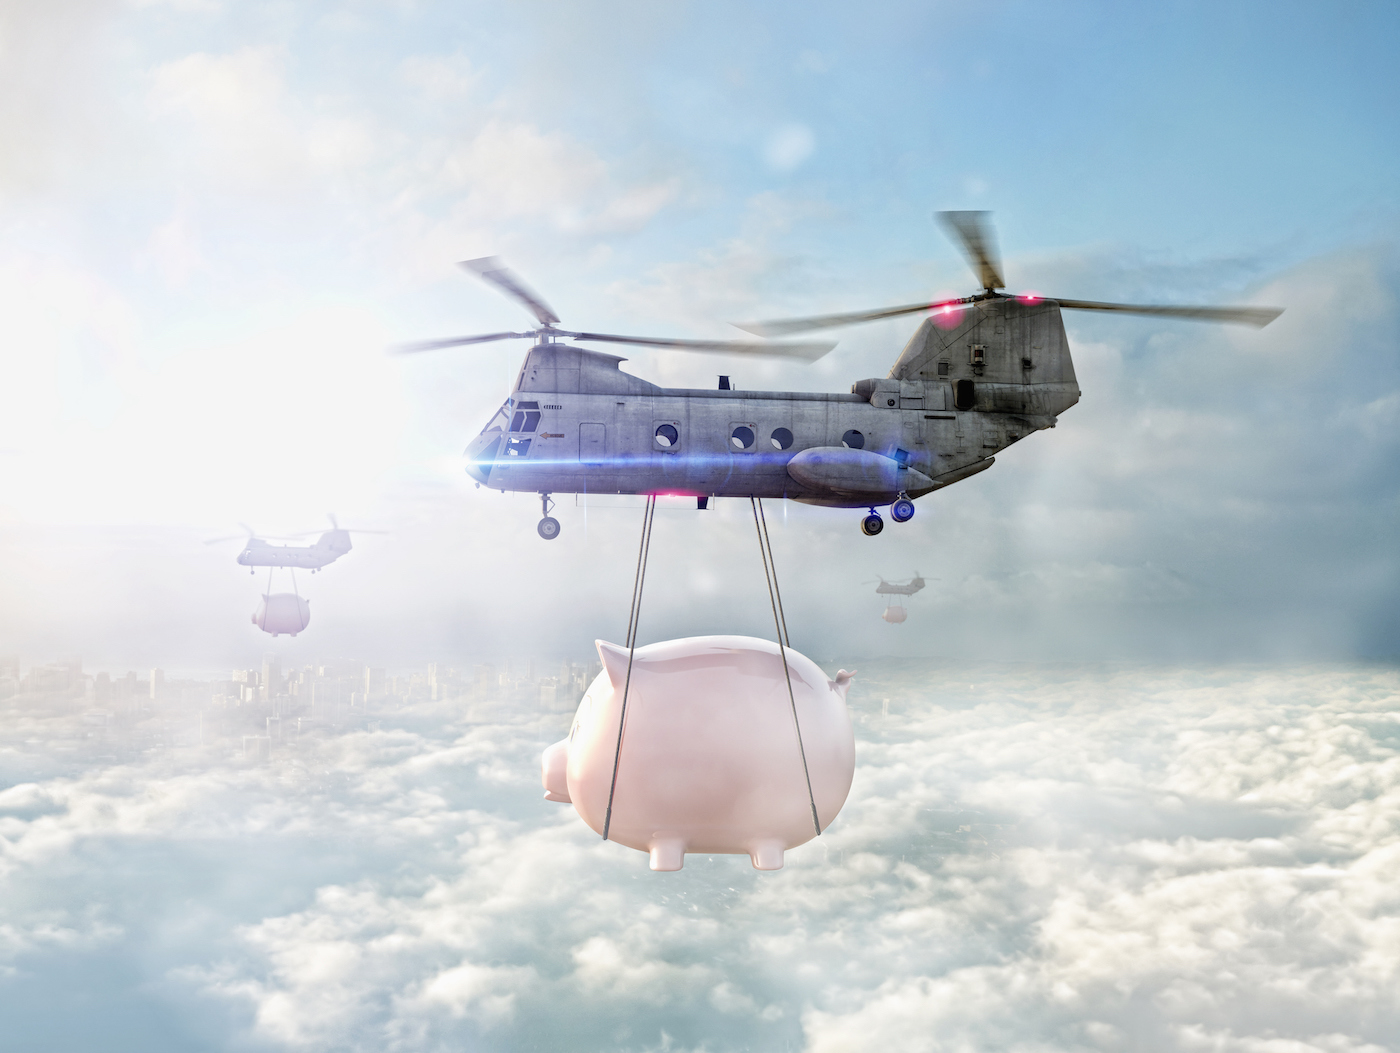 Вертолеты несут копилки над облаками